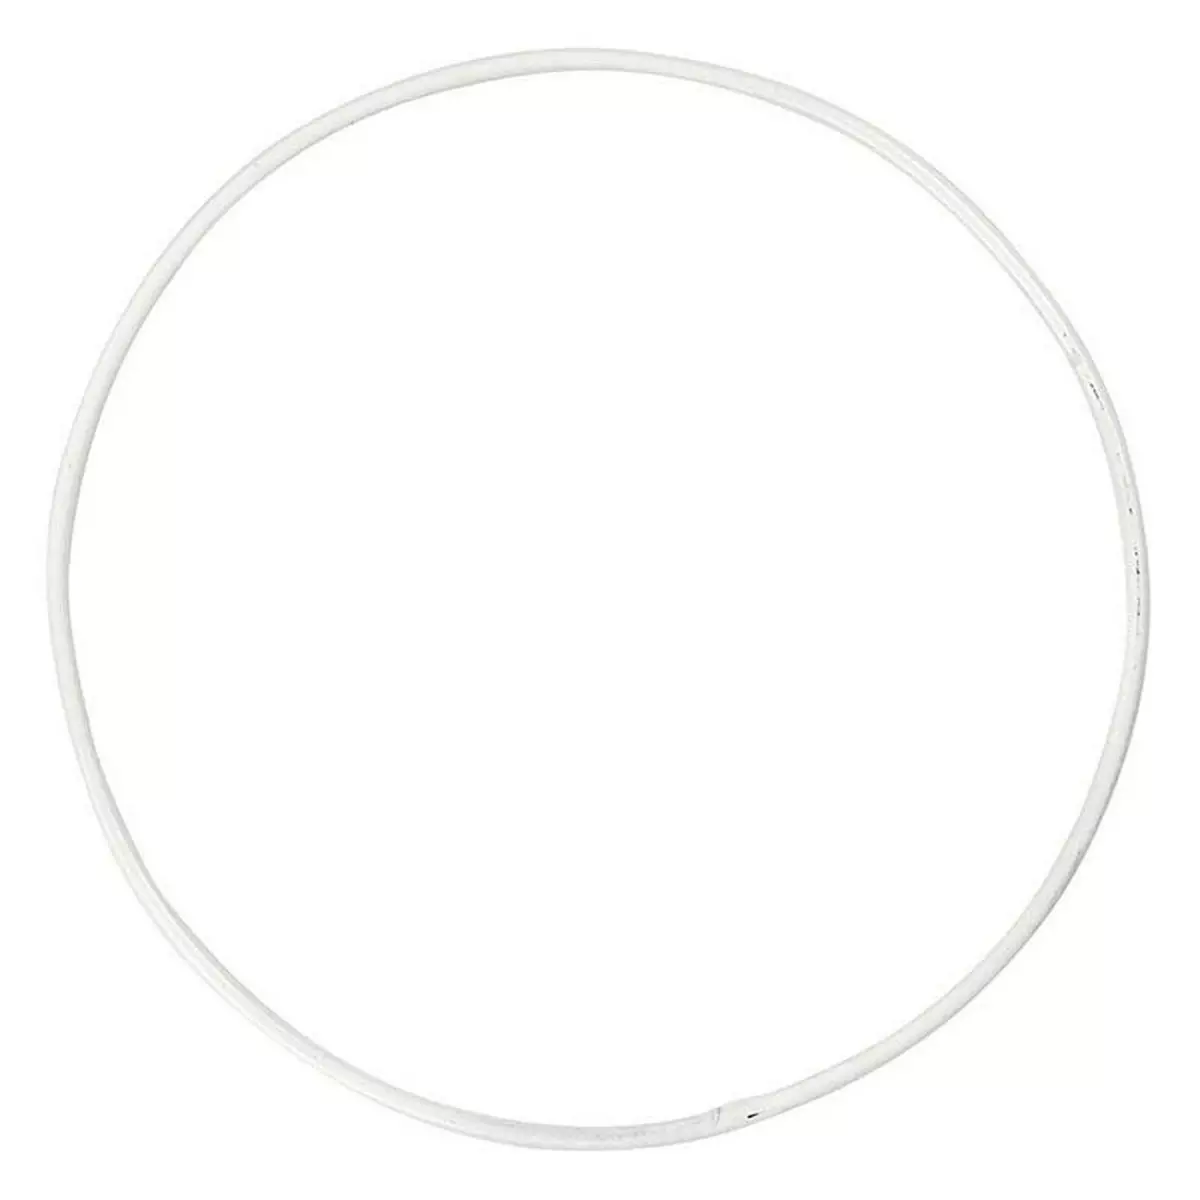  20 cercles en métal blanc Ø 10 cm